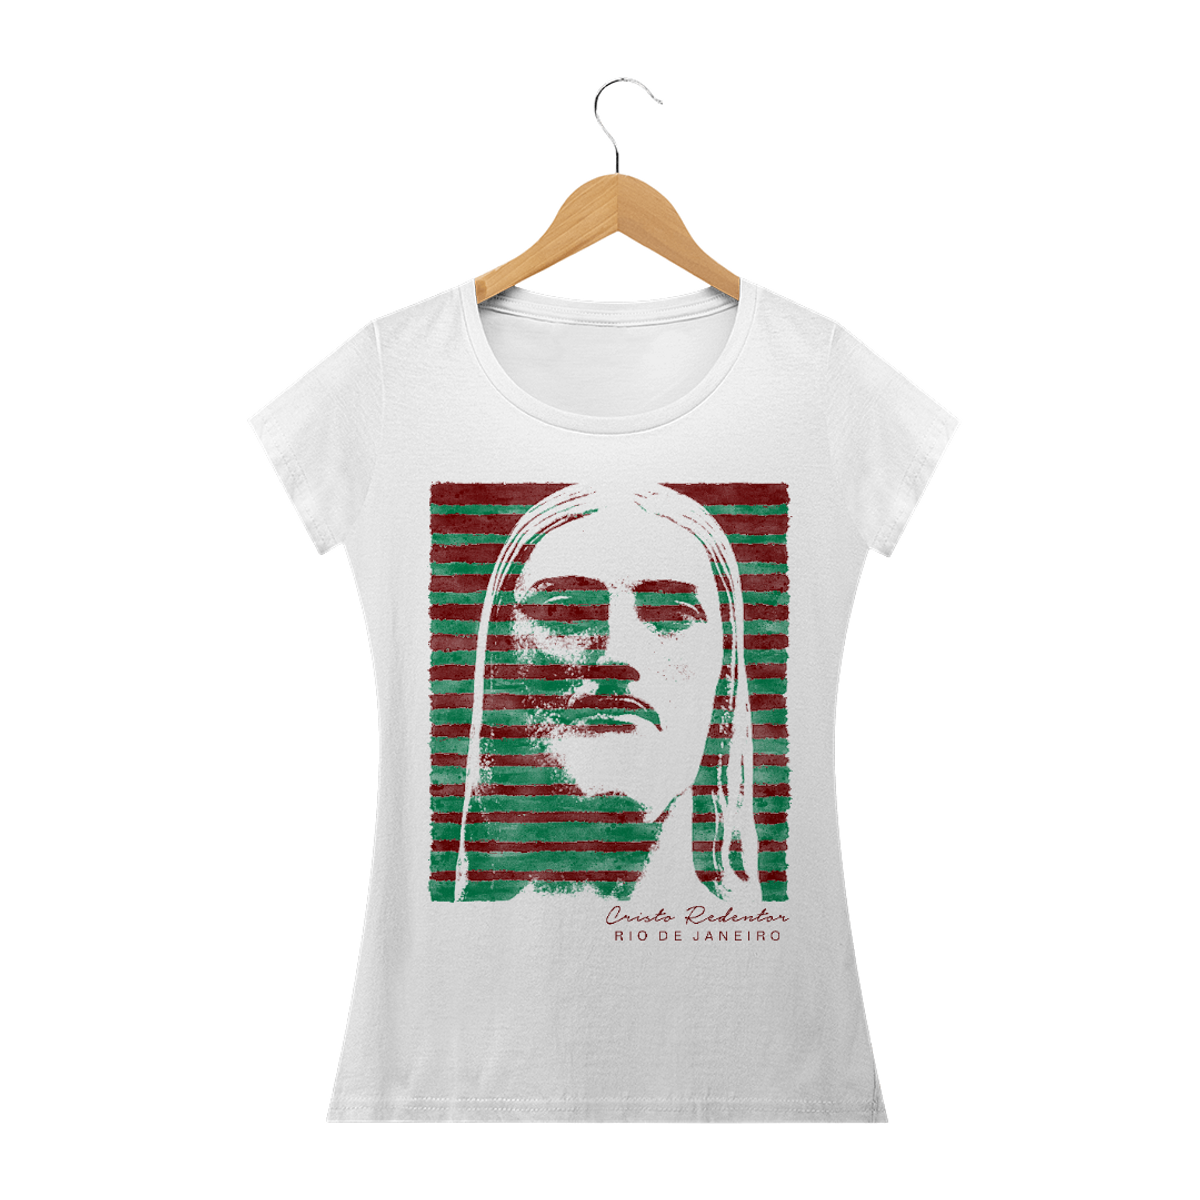 Nome do produto: Camiseta Feminina Cristo Redentor verde e grená